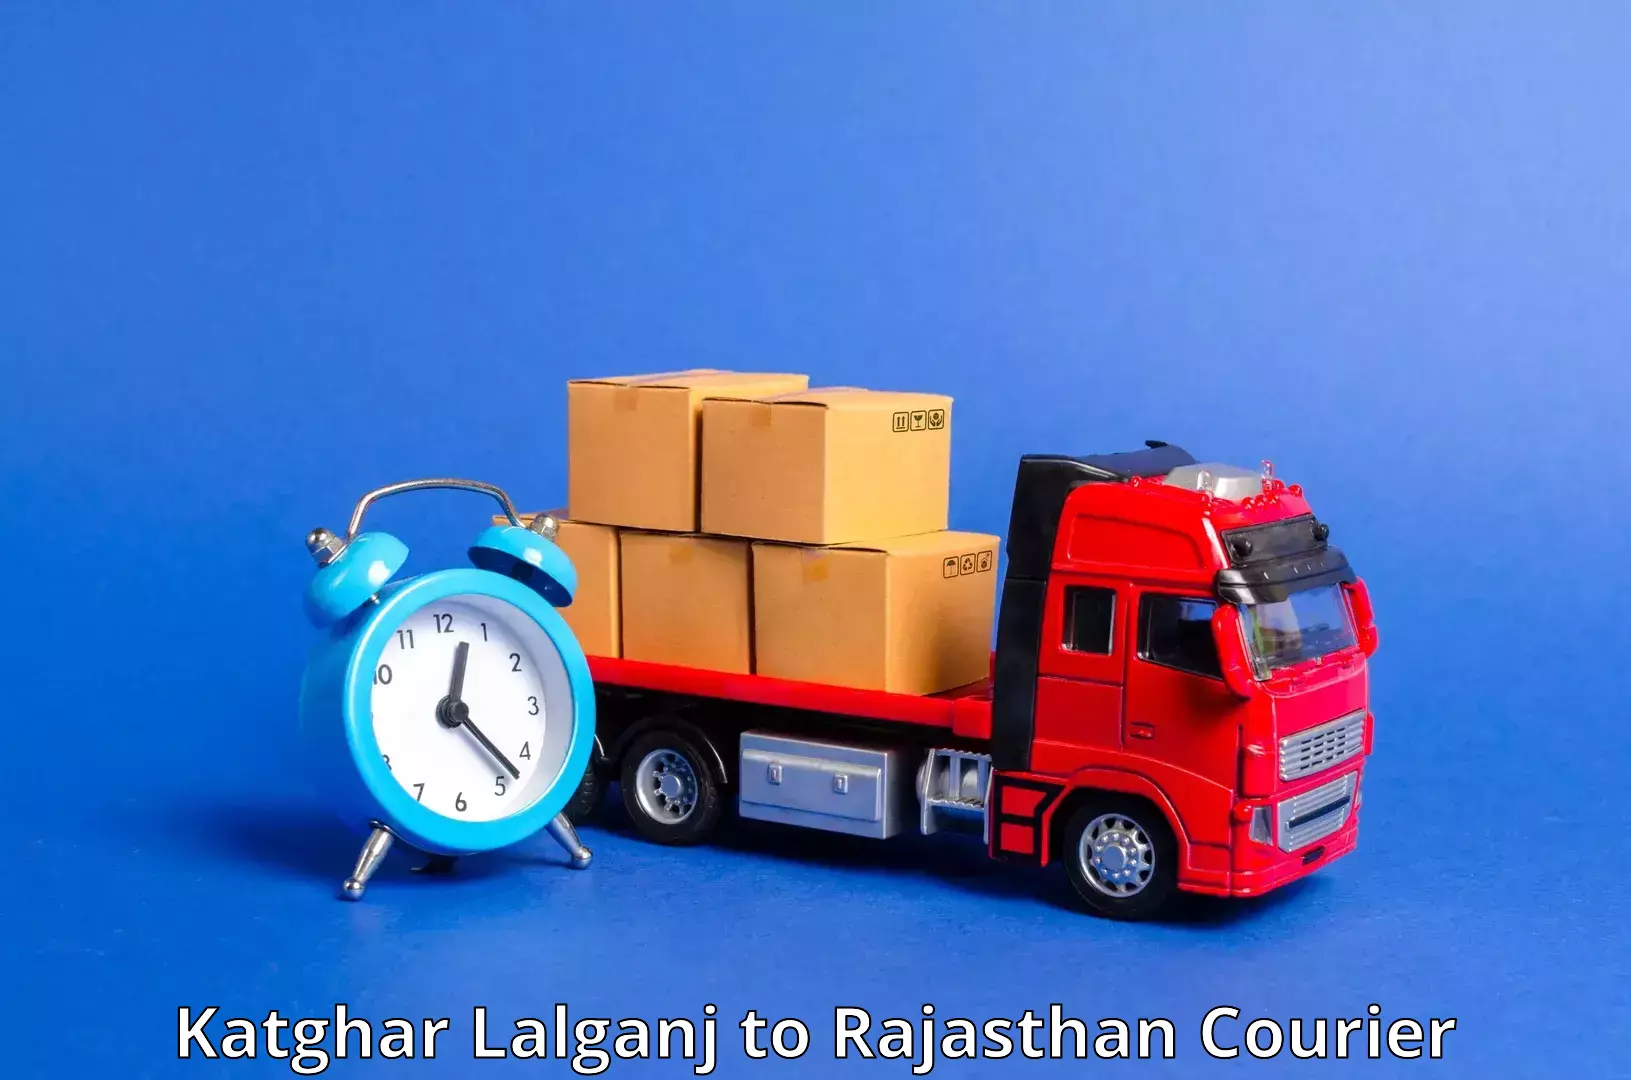 Automated shipping processes Katghar Lalganj to Pokhran